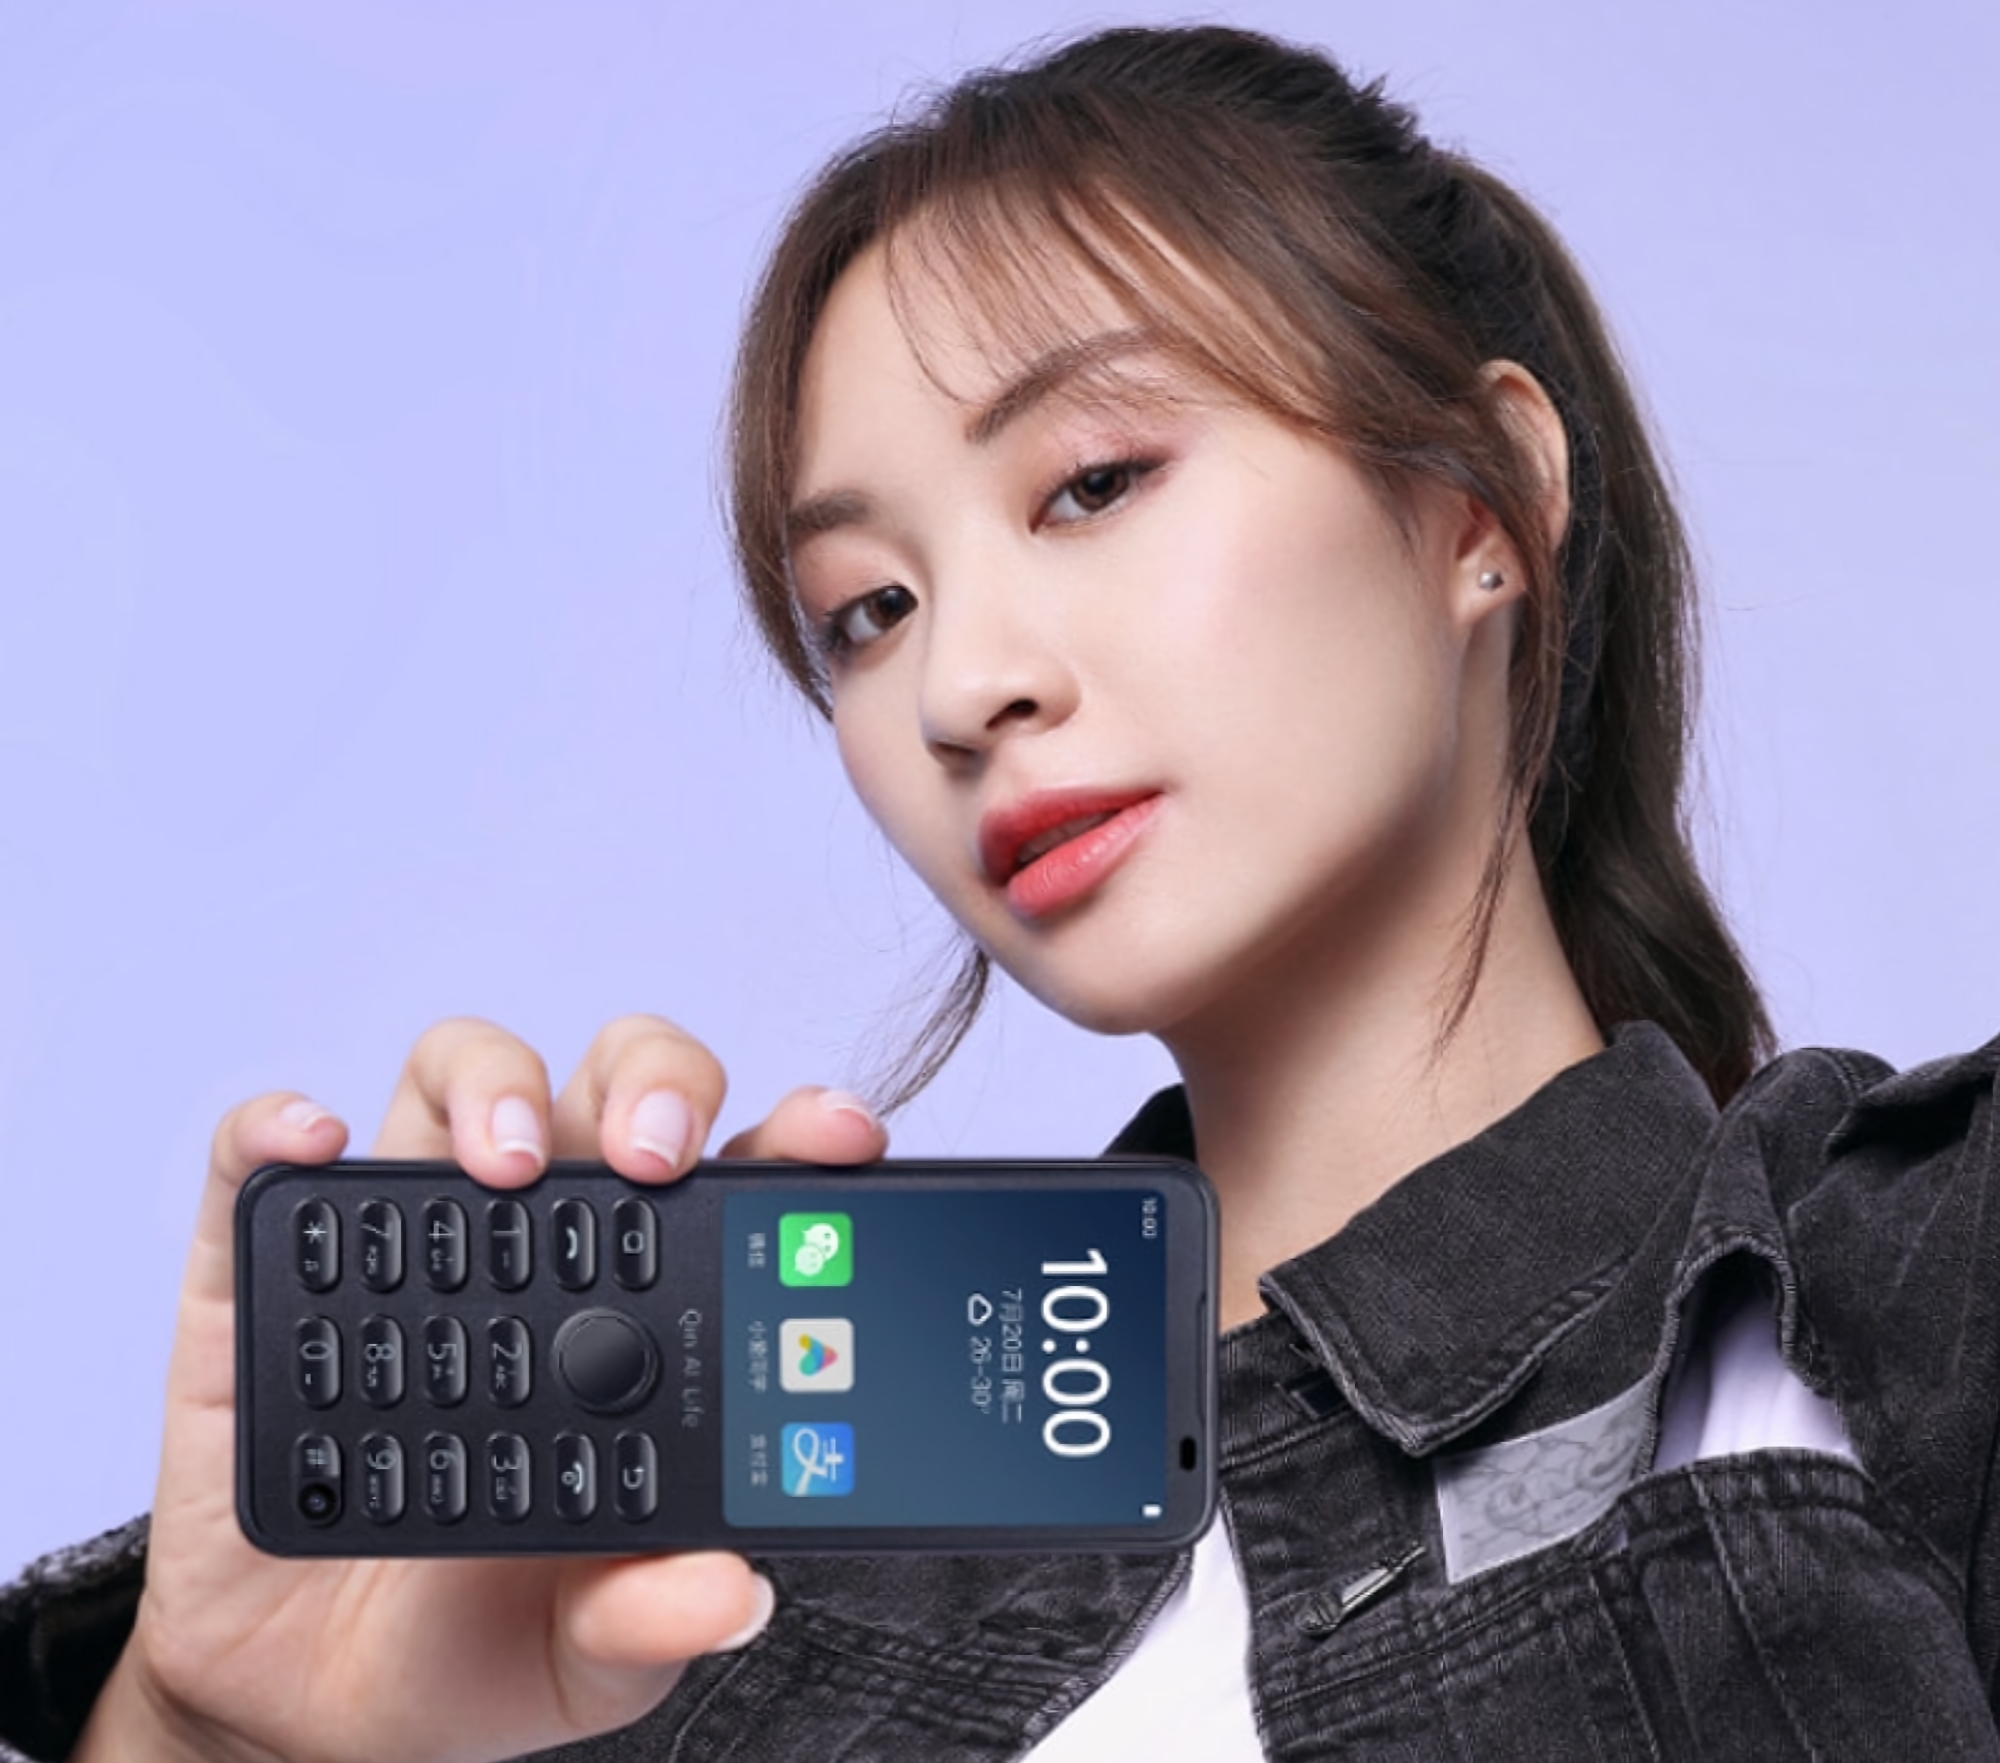 Qin F21 Pro : Le téléphone à boutons de l'écosystème de Xiaomi avec un écran de 2,8 pouces, le Wi-Fi, une caméra selfie et le système d'exploitation Android à bord pour 89 $